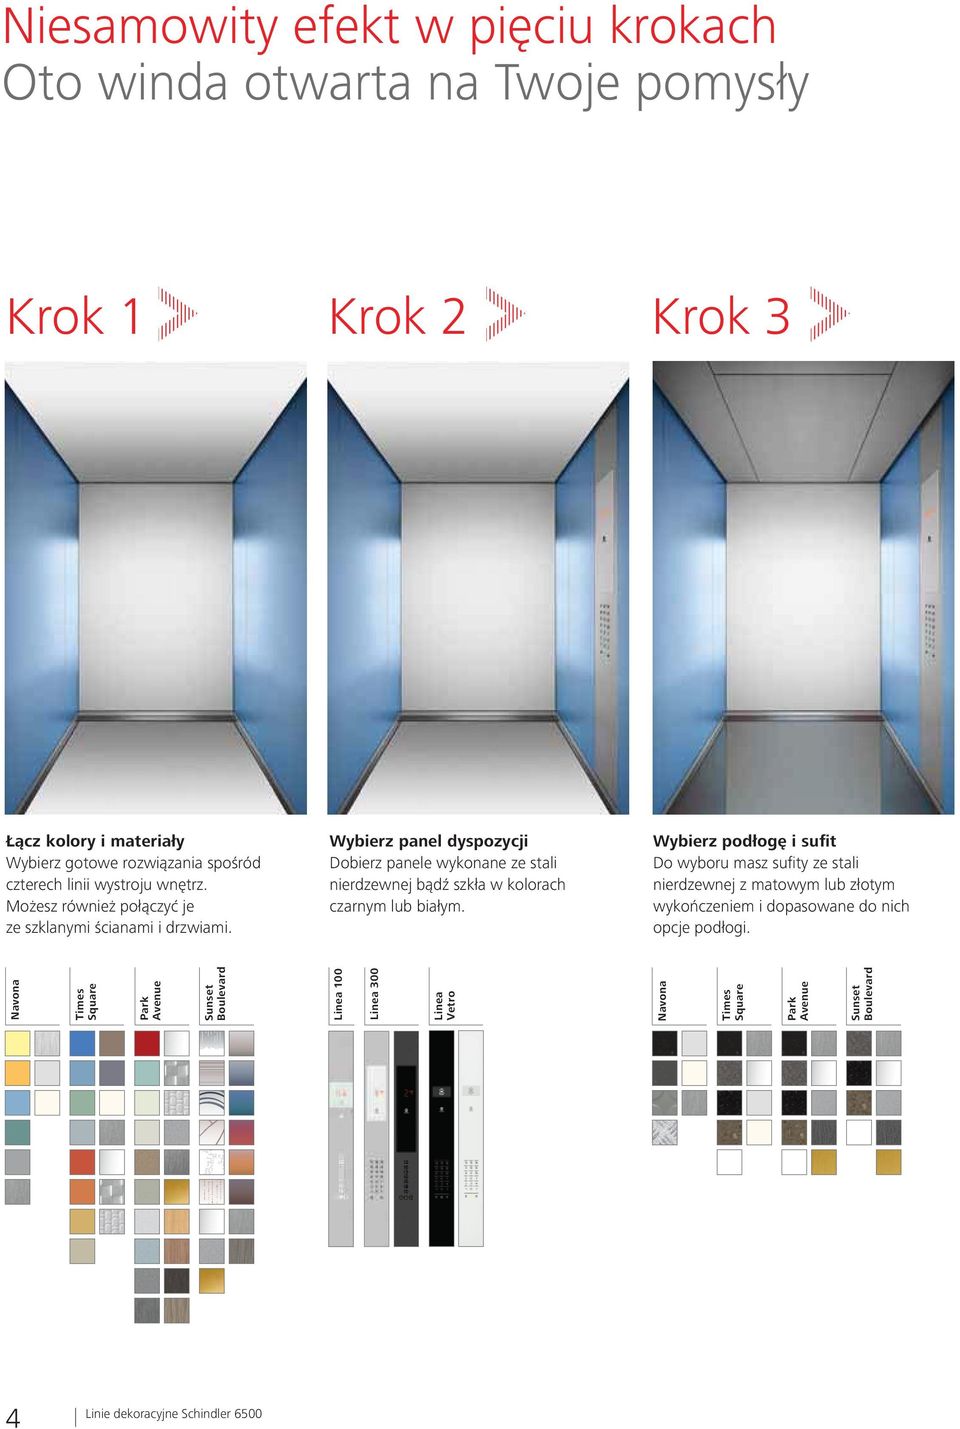 Wybierz panel dyspozycji Dobierz panele wykonane ze stali nierdzewnej bądź szkła w kolorach czarnym lub białym.